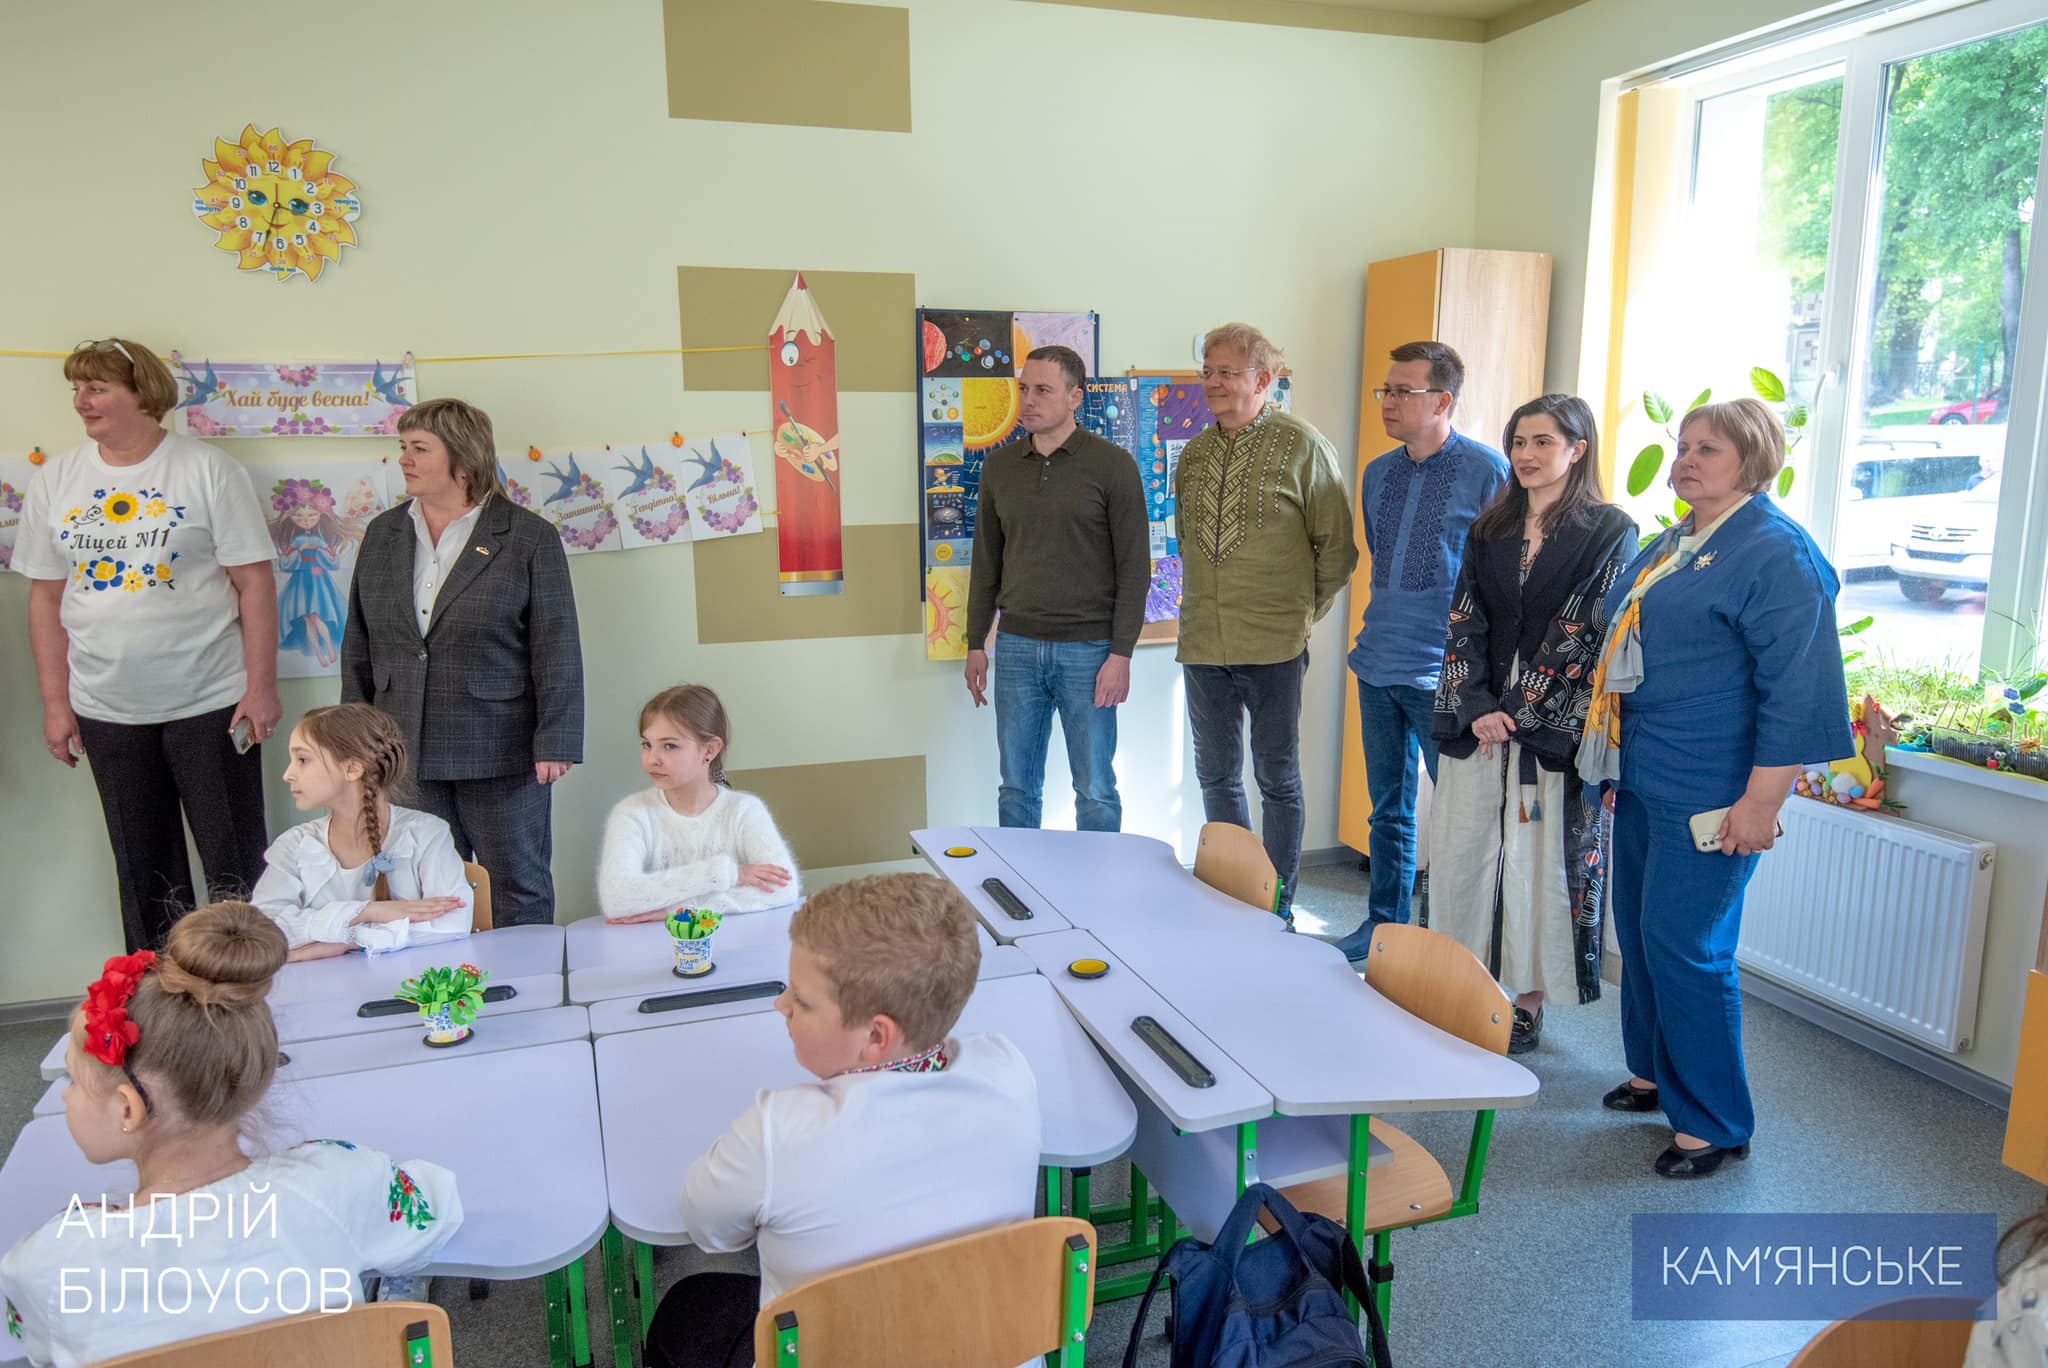 Мер Кам'янського Андрій Білоусов оголосив про відкриття нової школи - фото 3